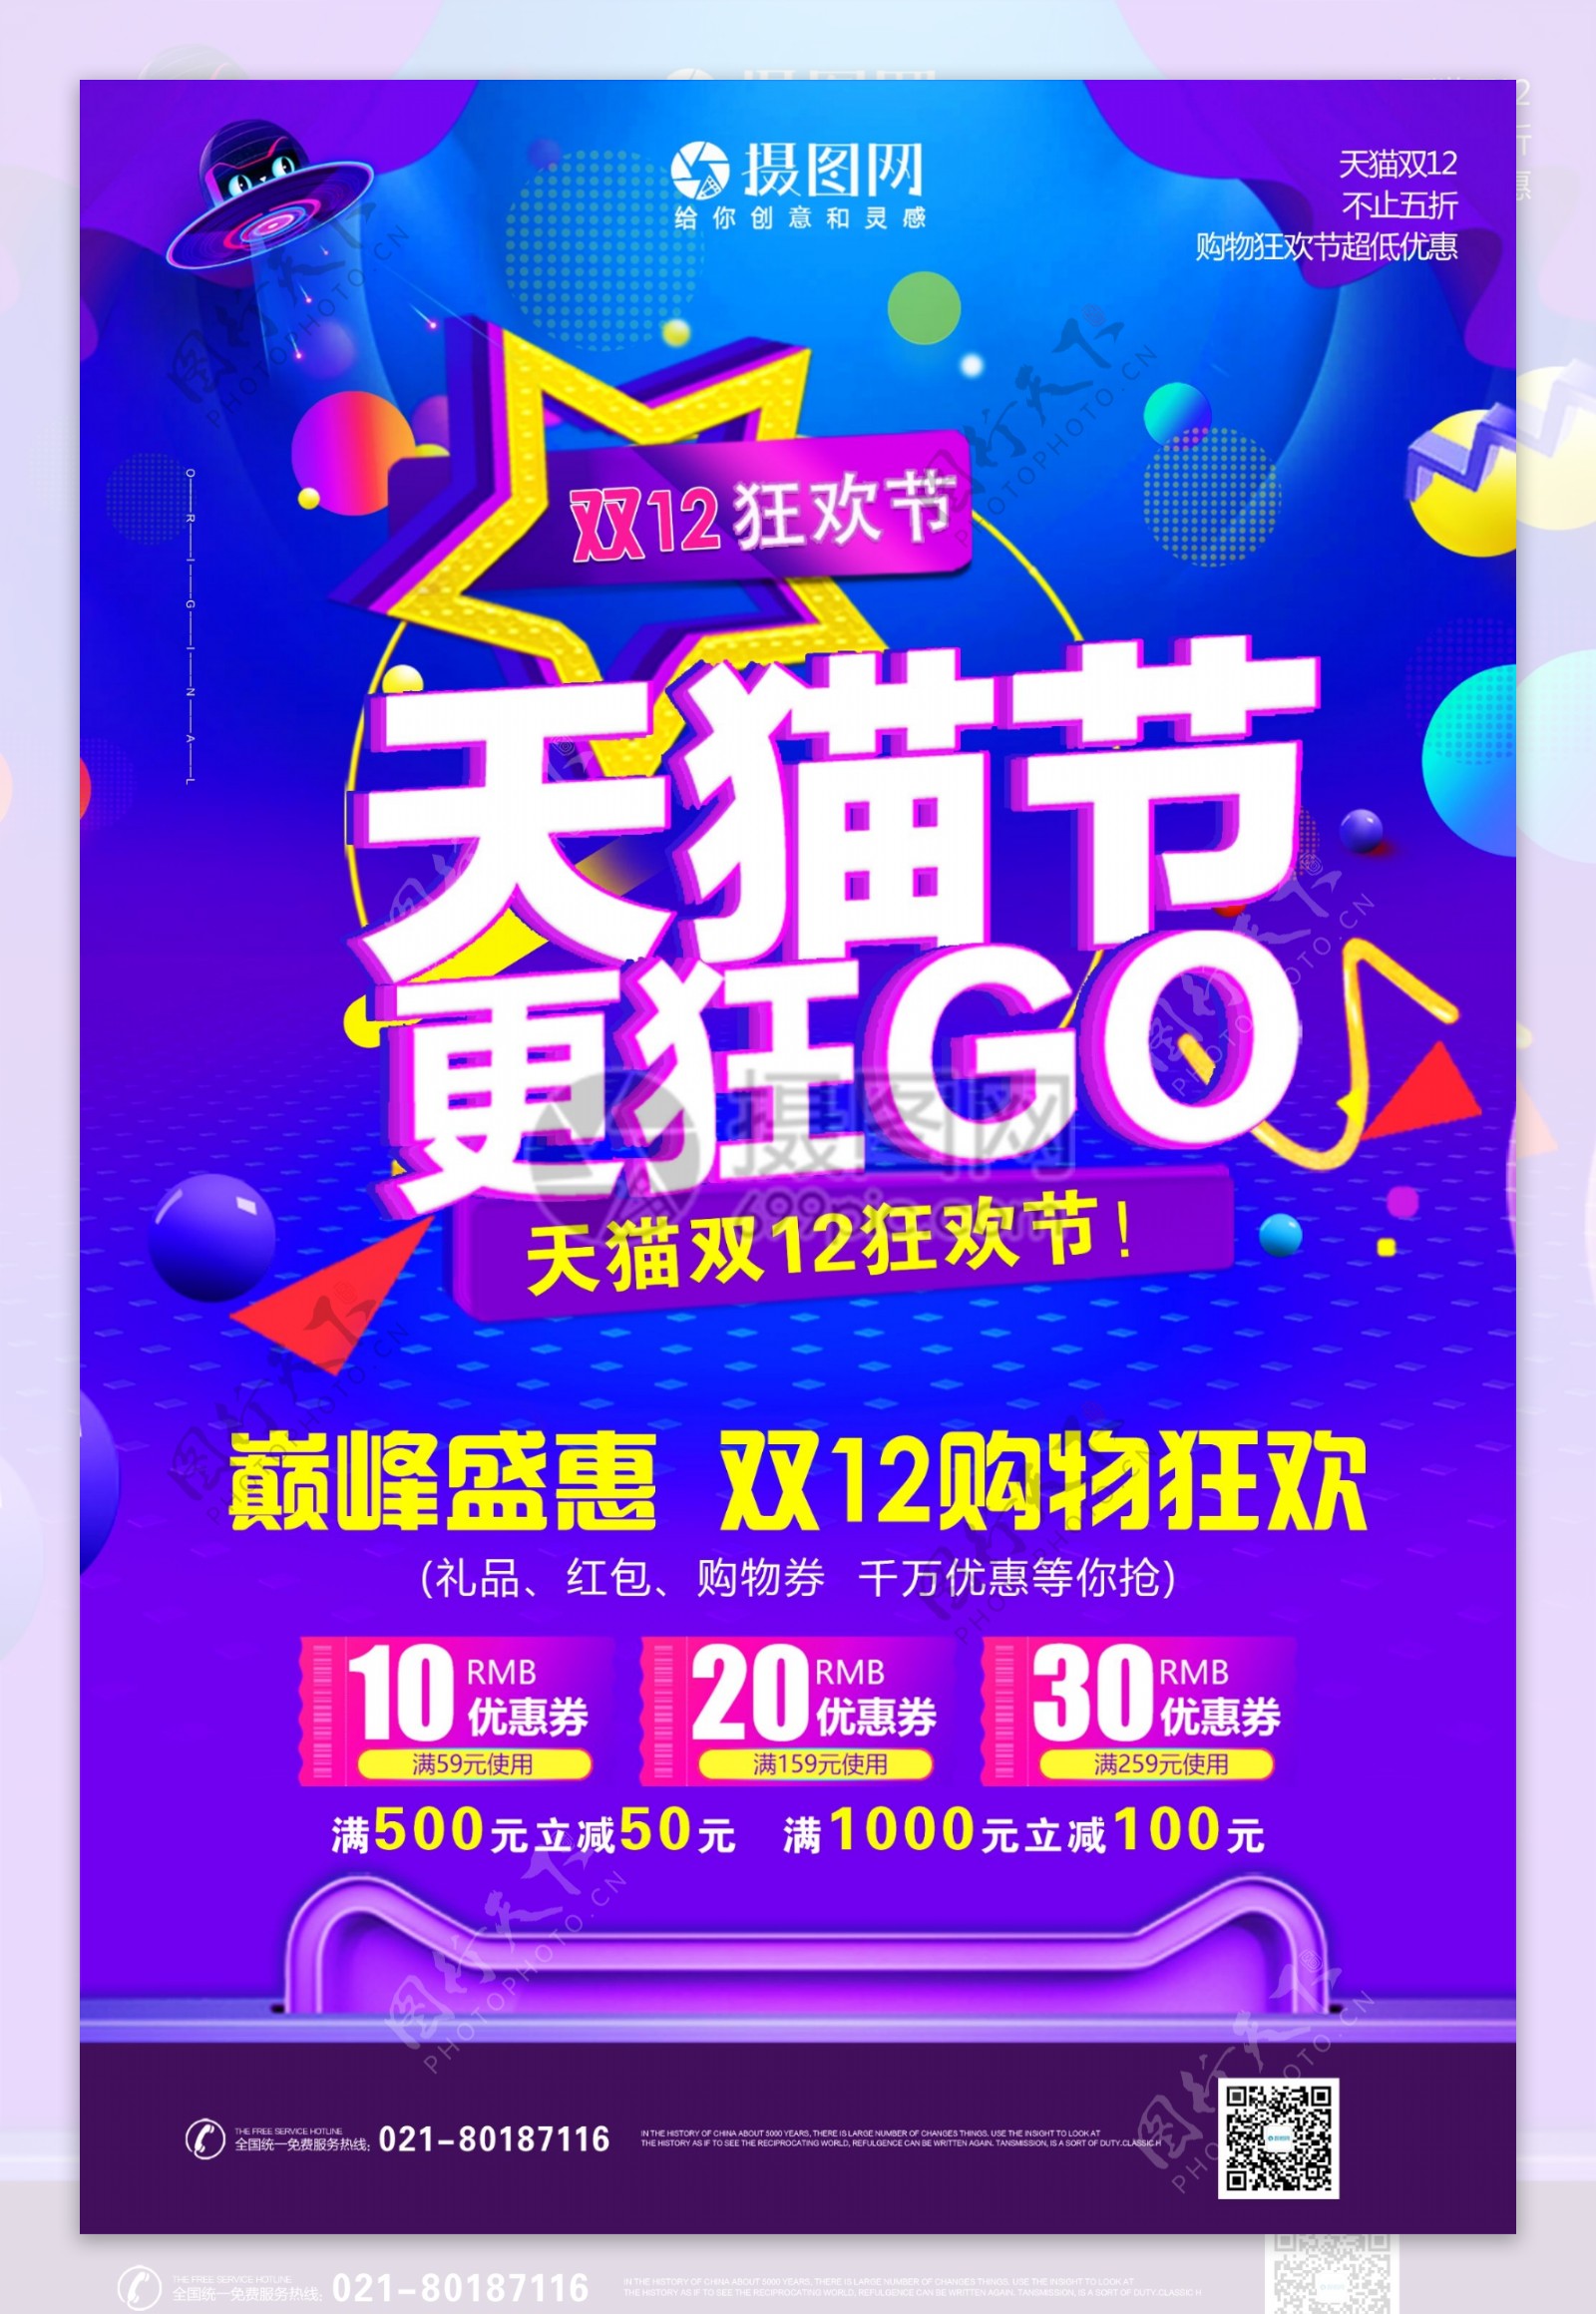 天猫节巅峰盛惠双12购物狂欢宣传海报